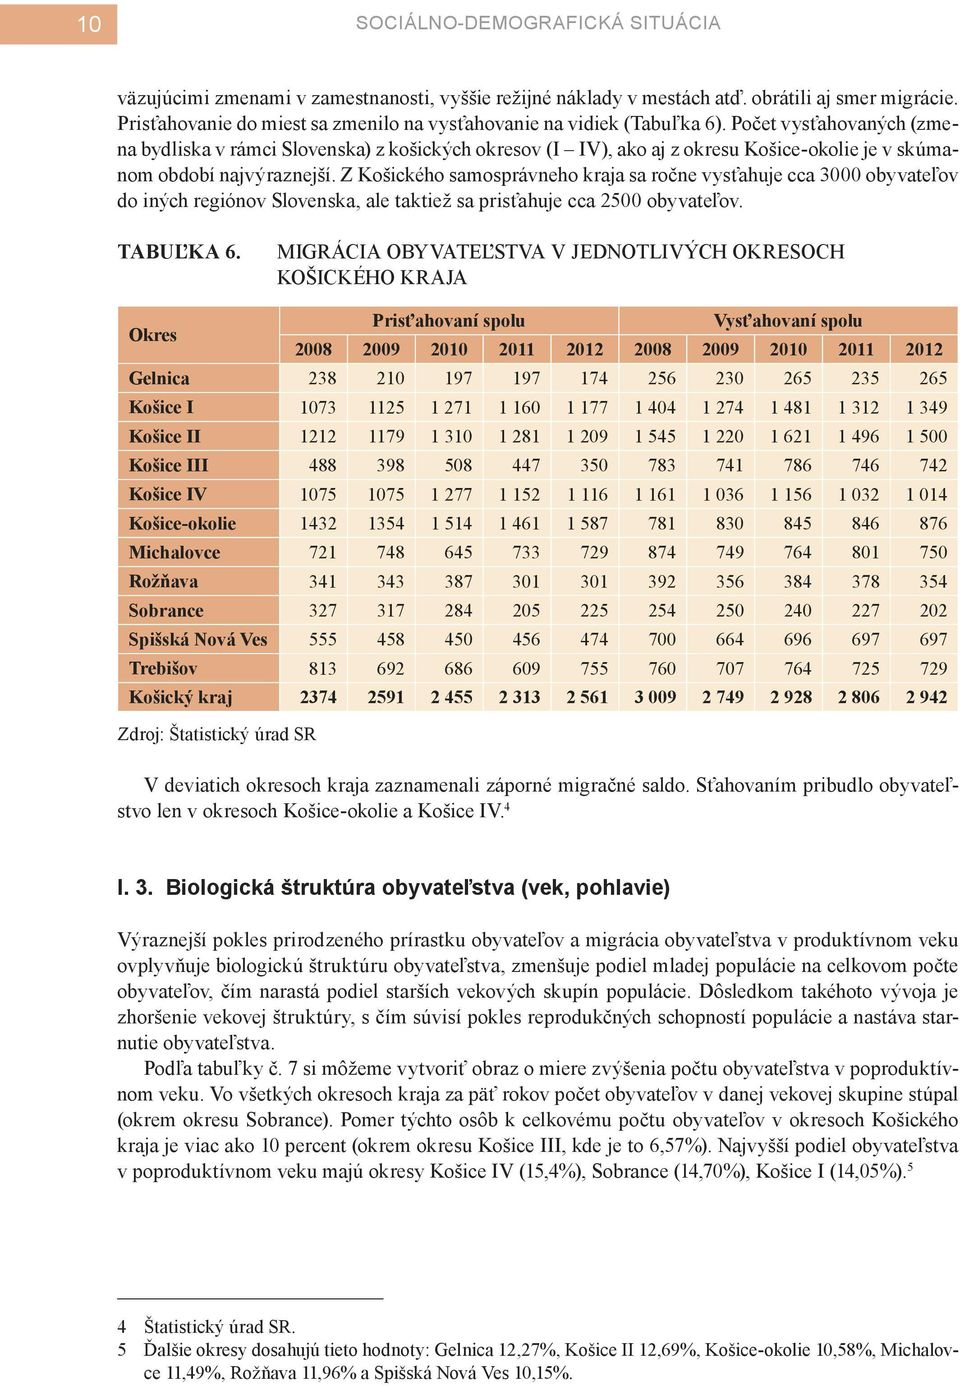 Počet vysťahovaných (zmena bydliska v rámci Slovenska) z košických okresov (I IV), ako aj z okresu Košice-okolie je v skúmanom období najvýraznejší.